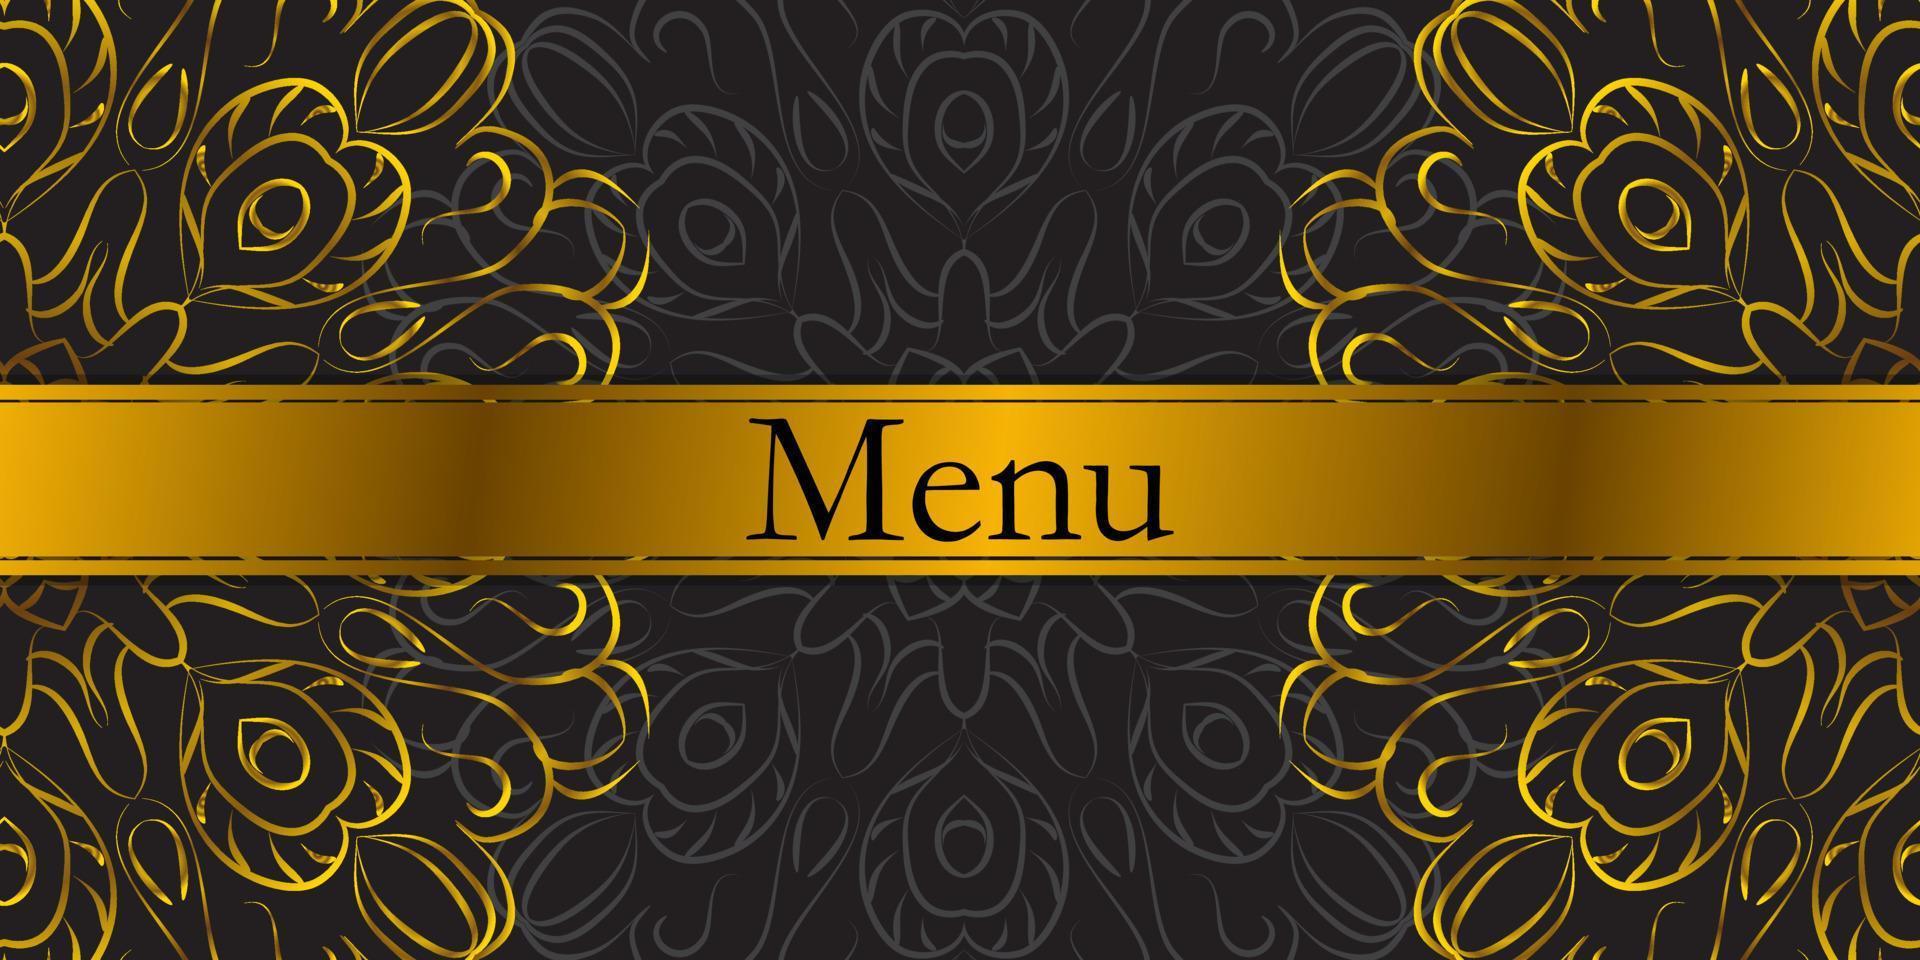 Menu for a restaurant or cafe. Vintage golden mandala patterns. Vector illustration